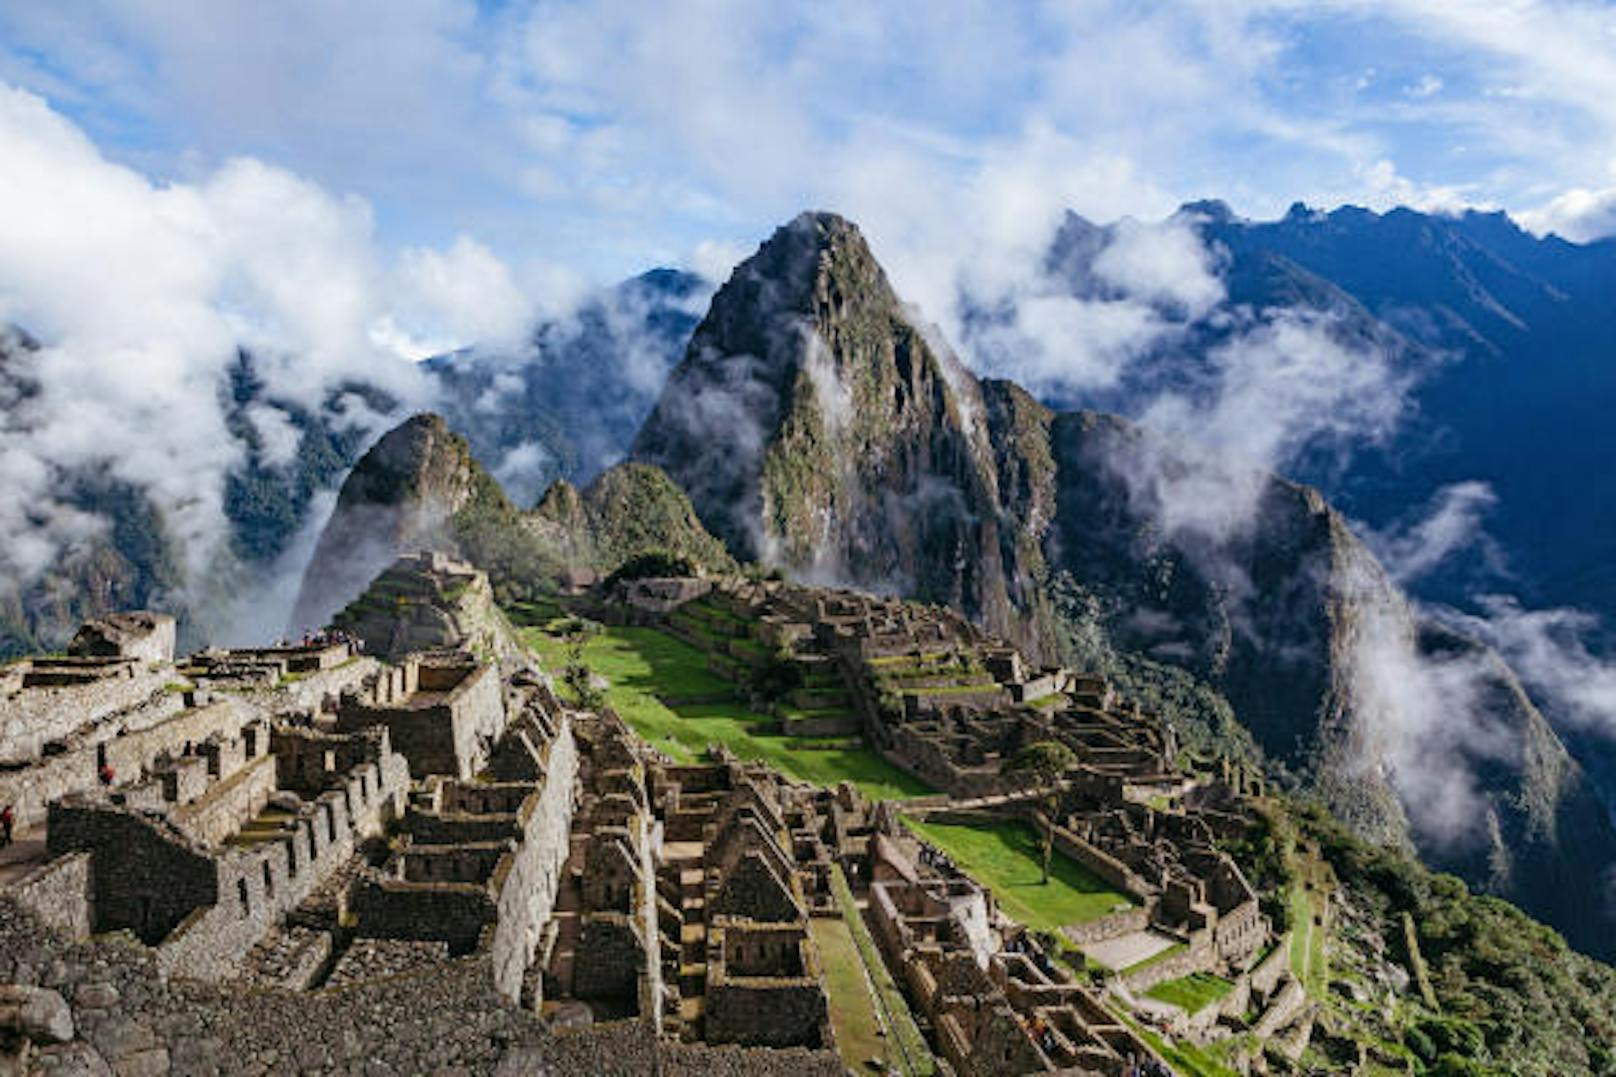 <b>Salkantay Trail, Peru:</b> Weil die Besucherzahlen für den populären Inka-Trail limitiert wurden, rückte der bis dahin wenig bekannte Salkantay-Trail in den Fokus vieler Backpacker. Die Alternativstrecke zum Machu Picchu bietet weitaus mehr Natur, wenngleich weniger archäologische Highlights als der Hauptweg. Distanz: 84 Kilometer, Dauer: 4 bis 5 Tage, Anforderung: mittel